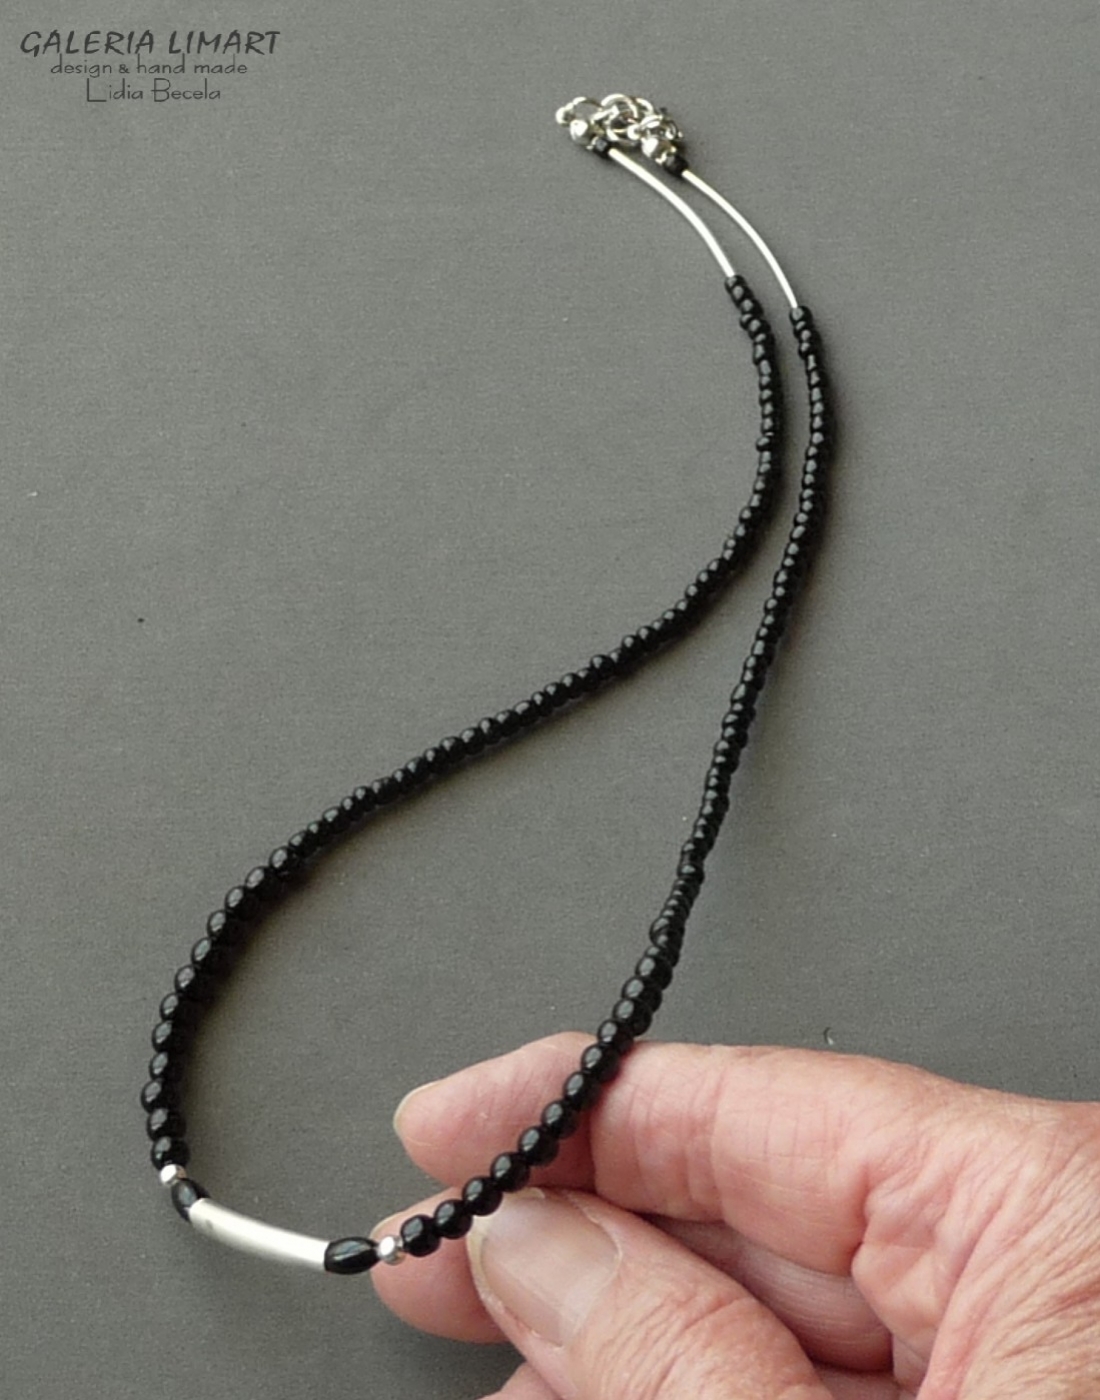 minimalistyczny naszyjnik z mnóstwa drobnych czarnych szklanych koralików (seed beads) dodatkowo ozdobiobny stalowymi rurkami. Dla NIEGO lub dla NIEJ